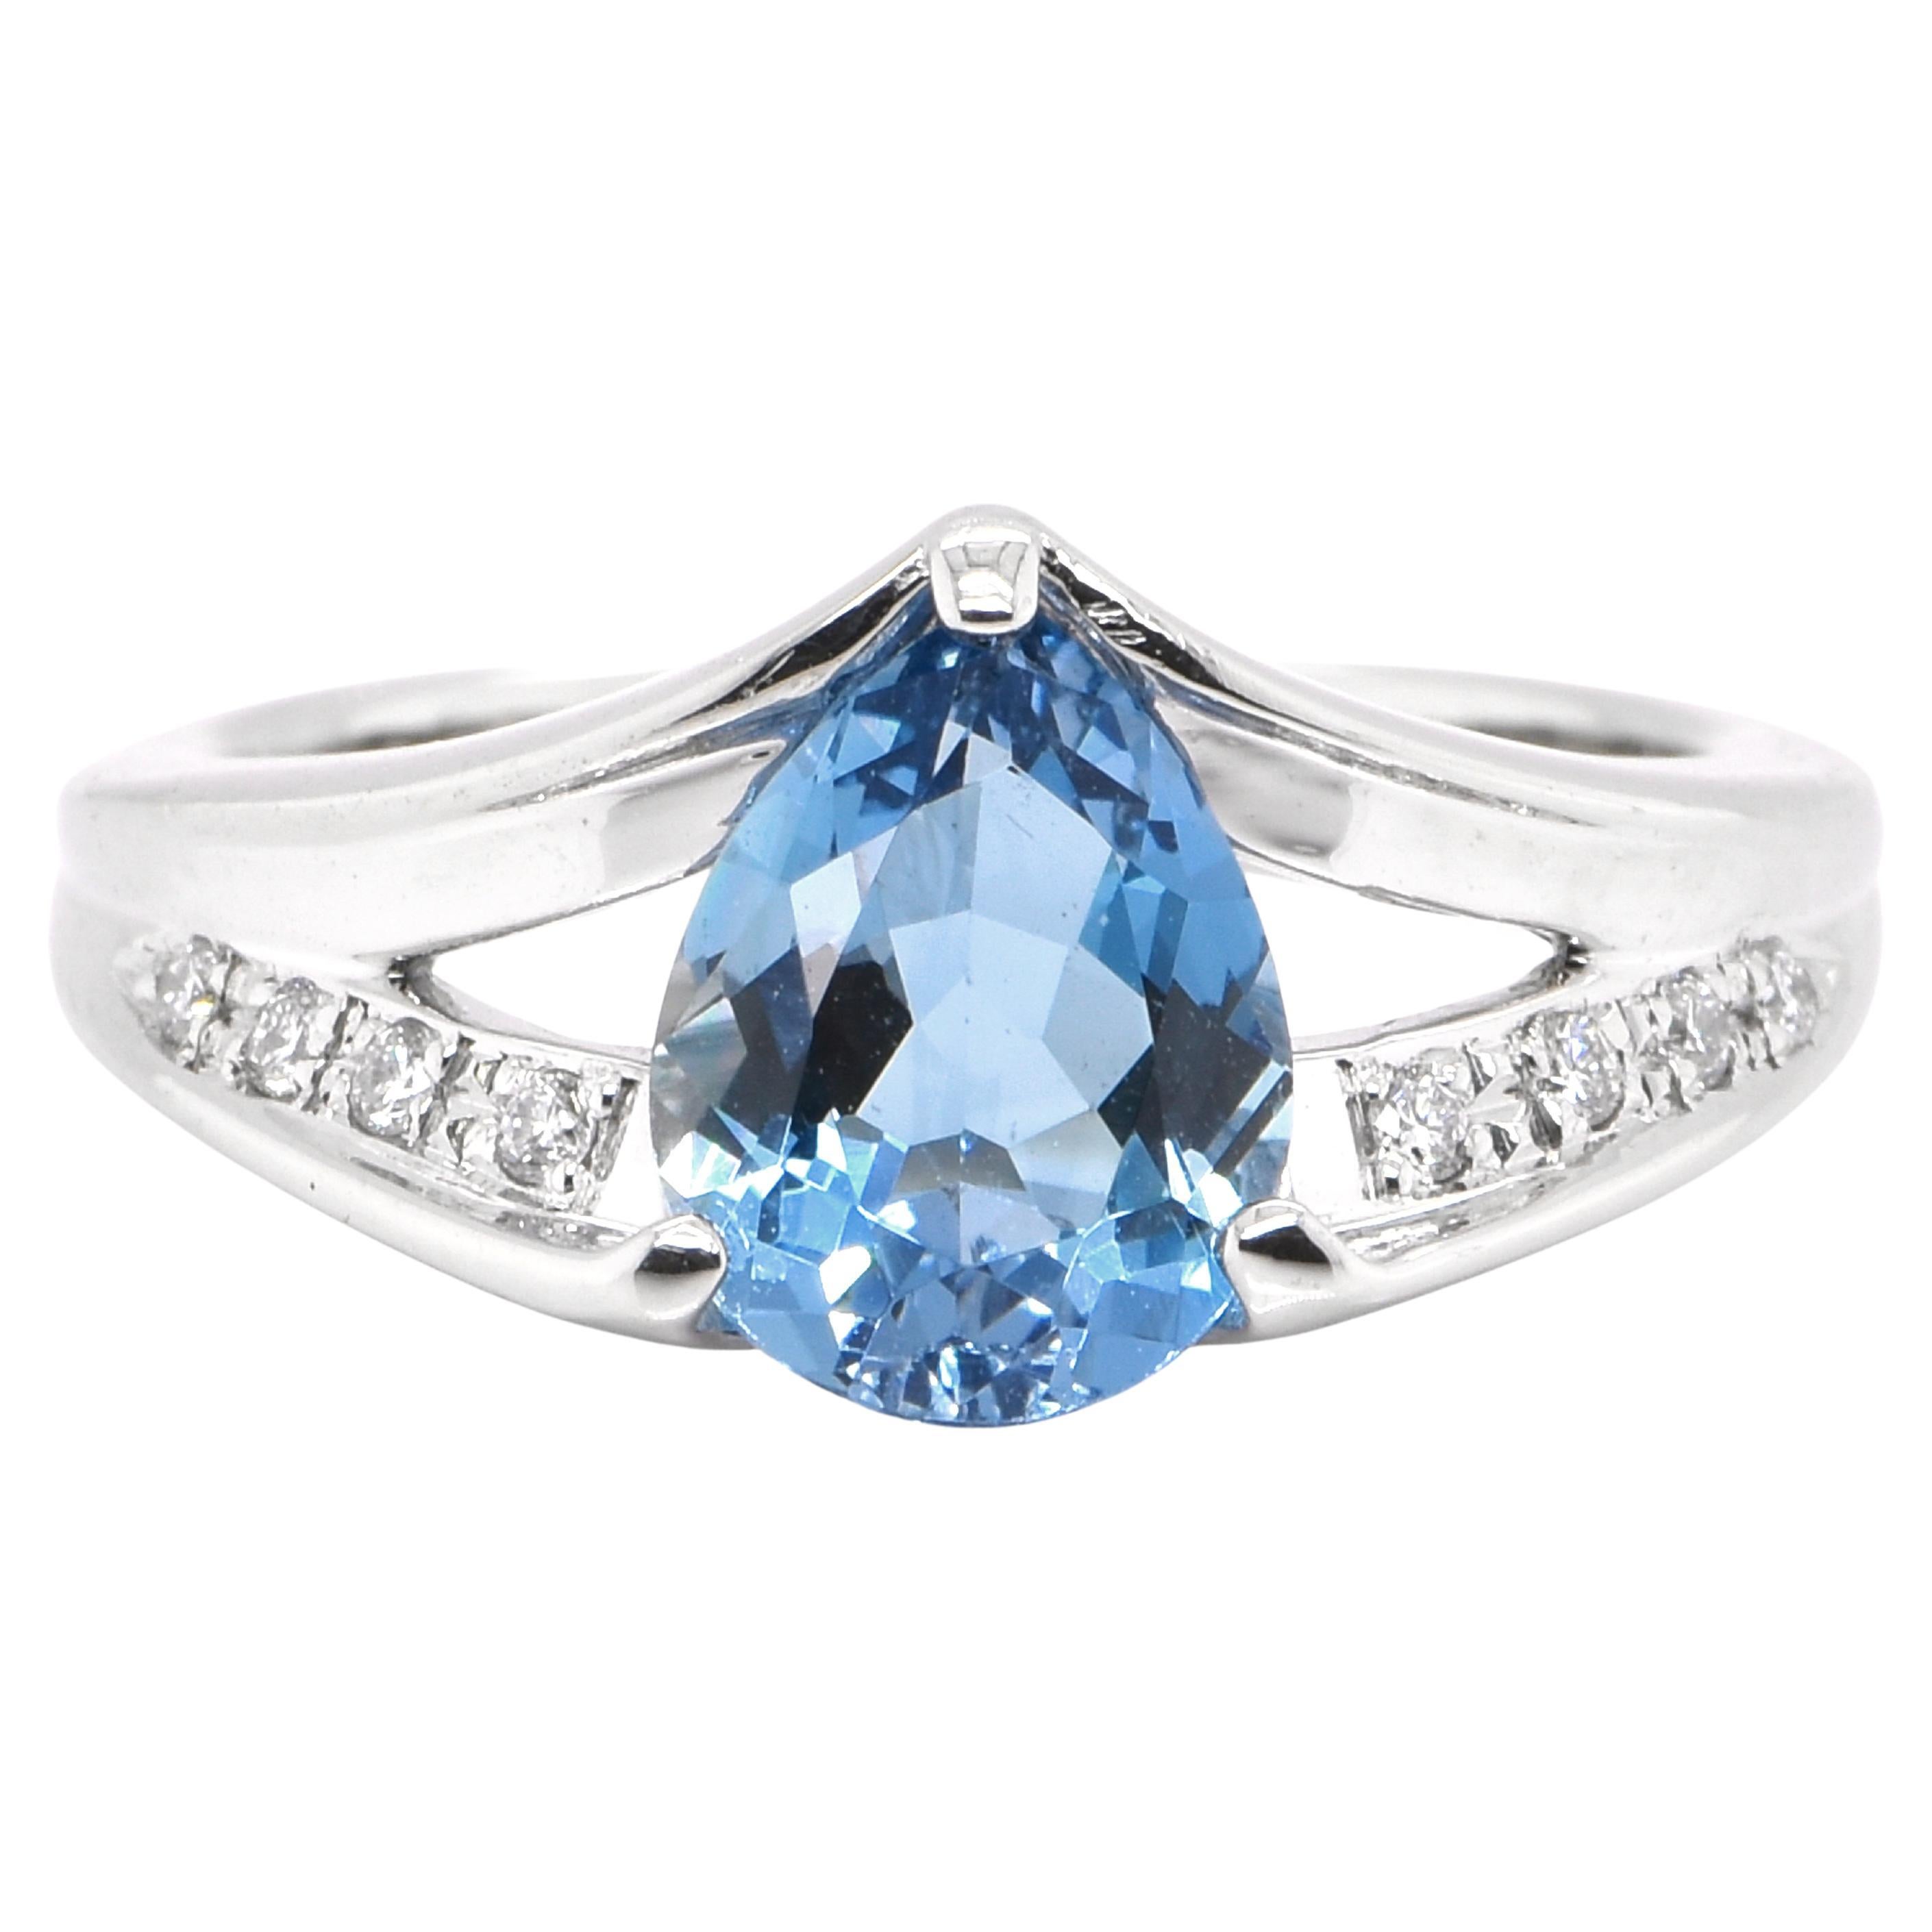 1.51 Carat Natural Santa-Maria Aquamarine and Diamond Ring set in Platinum For Sale